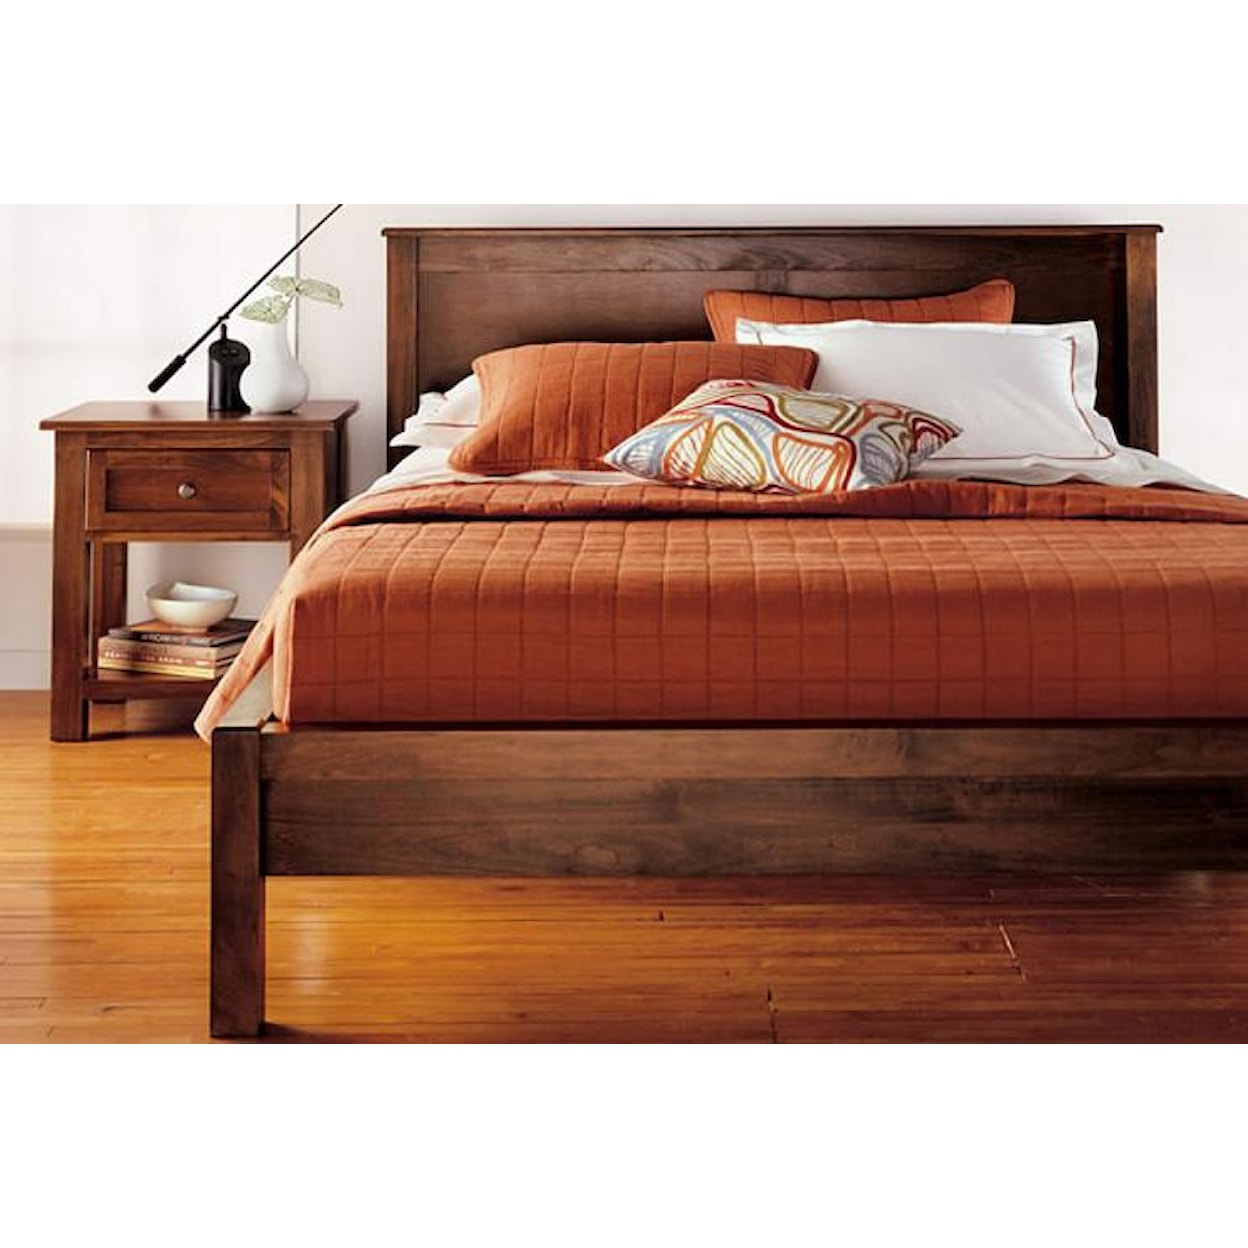 Witmer Furniture Taylor J King Size 2 Panel Platform Bed